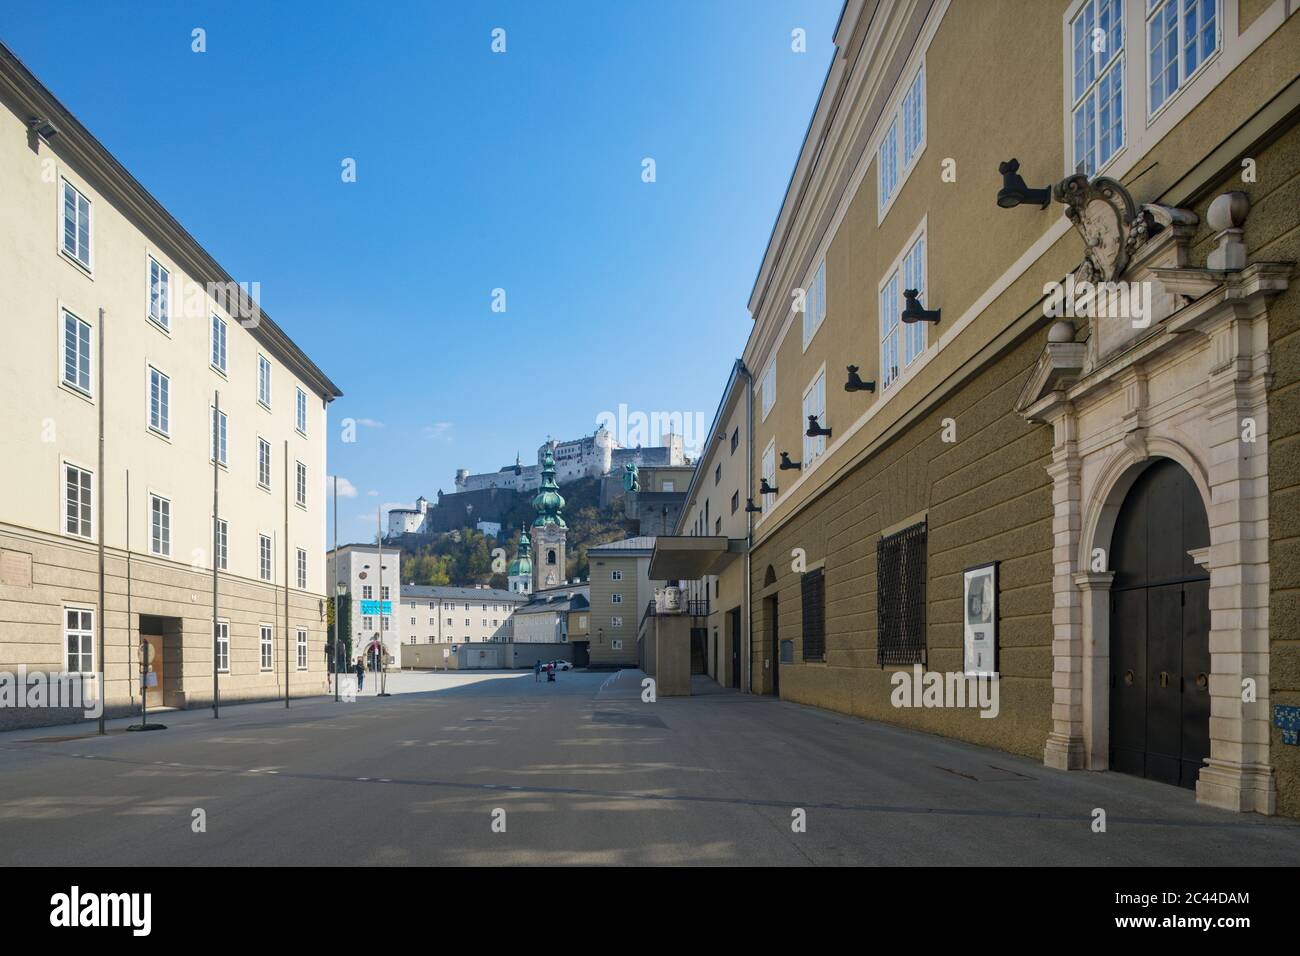 Austria, Salisburgo, Hofstallgasse con il grande Festival Hall e la Fortezza di Hohensalzburg, vuoto a causa della pandemia di Coronavirus Foto Stock